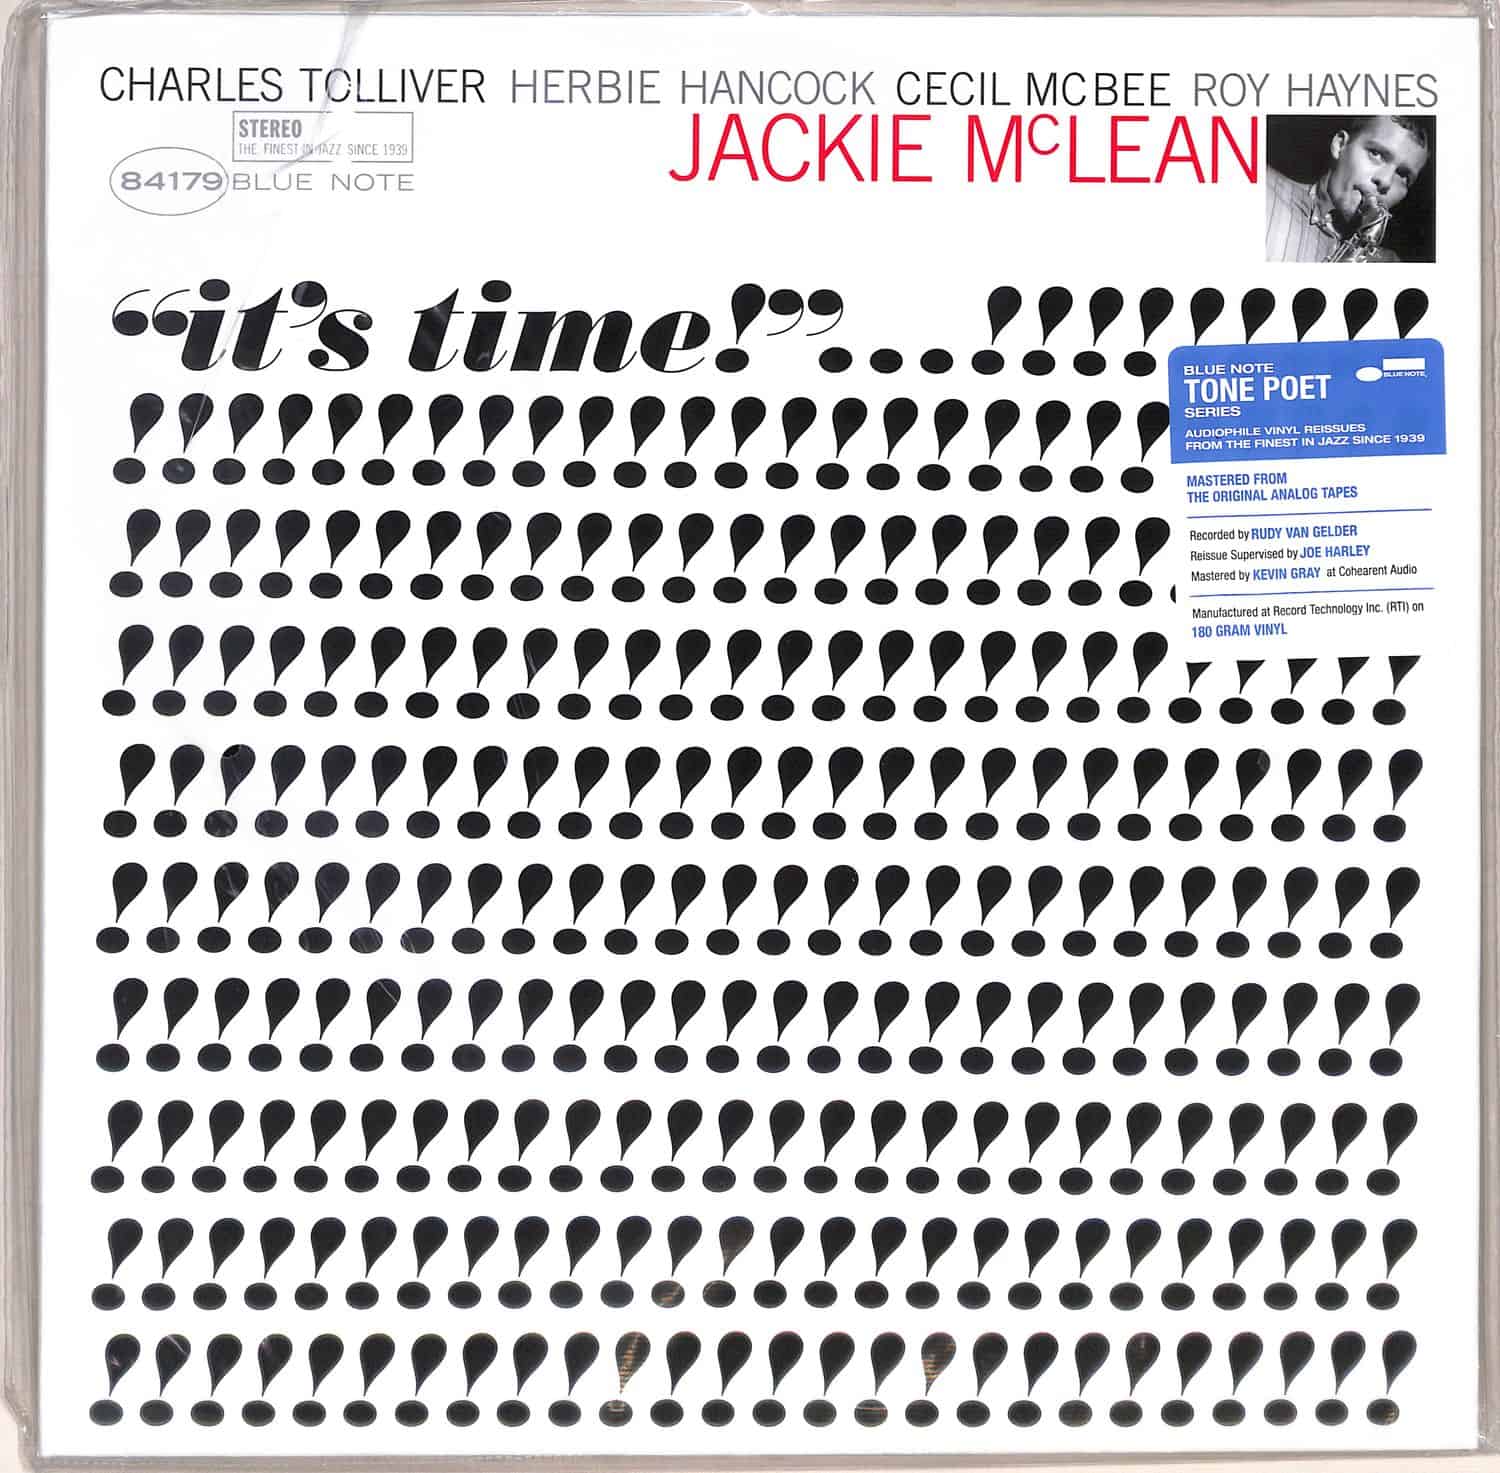 Jackie McLean - ITS TIME 